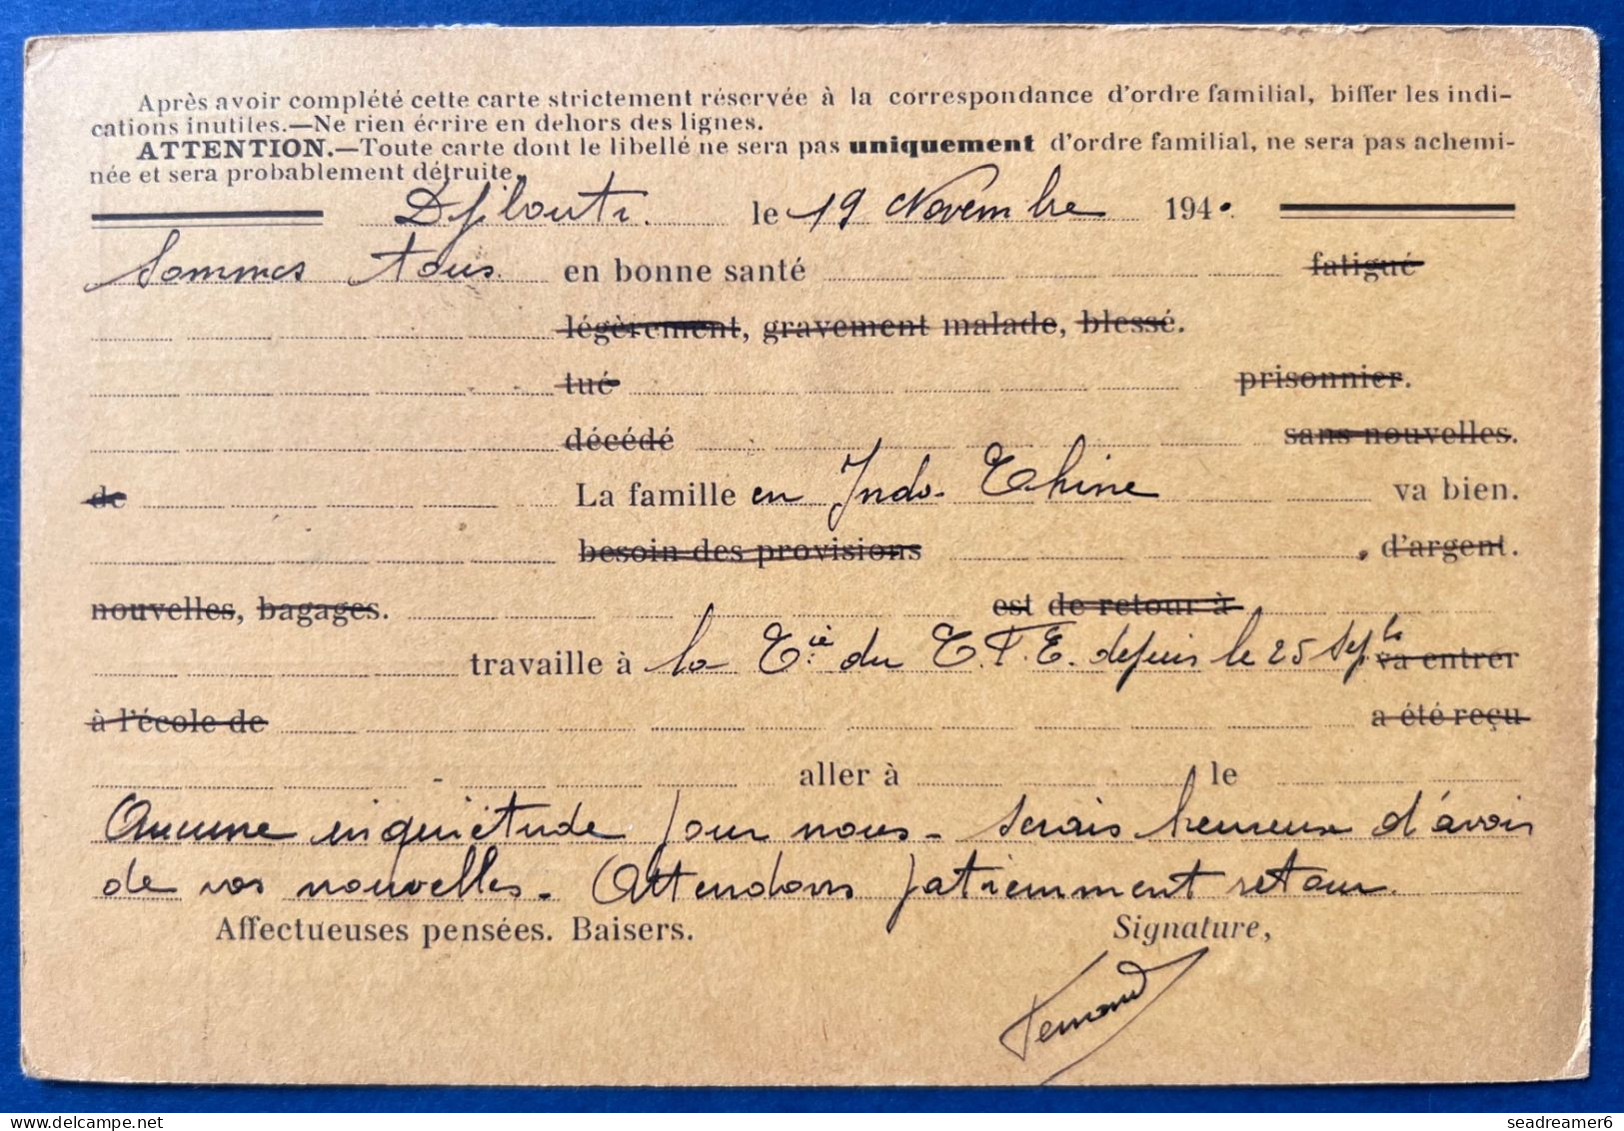 Carte Postale Formulaire Interzone à Usage D'un Civil Affranchie Djibouti N°98 & 187 X2 Du 20 NOV 1940 Blocus ANGLAIS R - Lettres & Documents